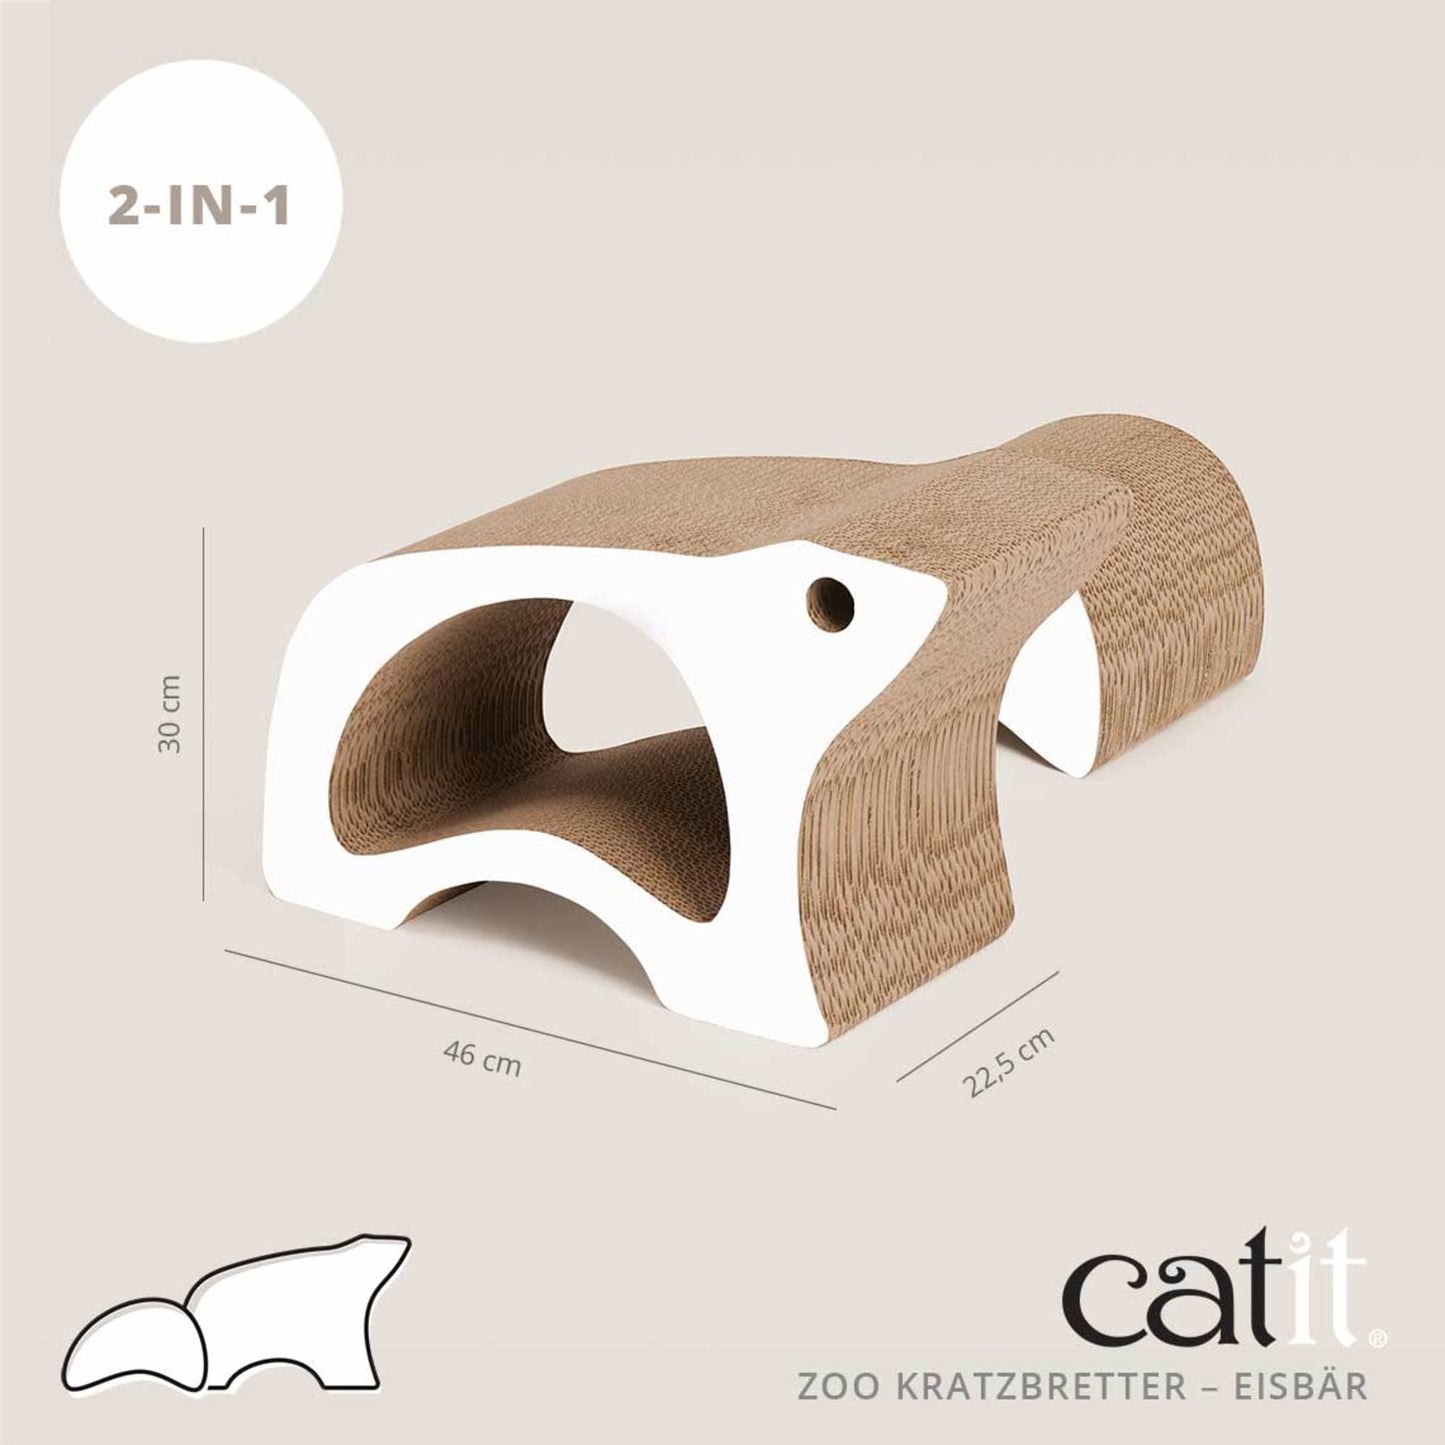 Catit Zoo Kratzbretter ─ Eisbär